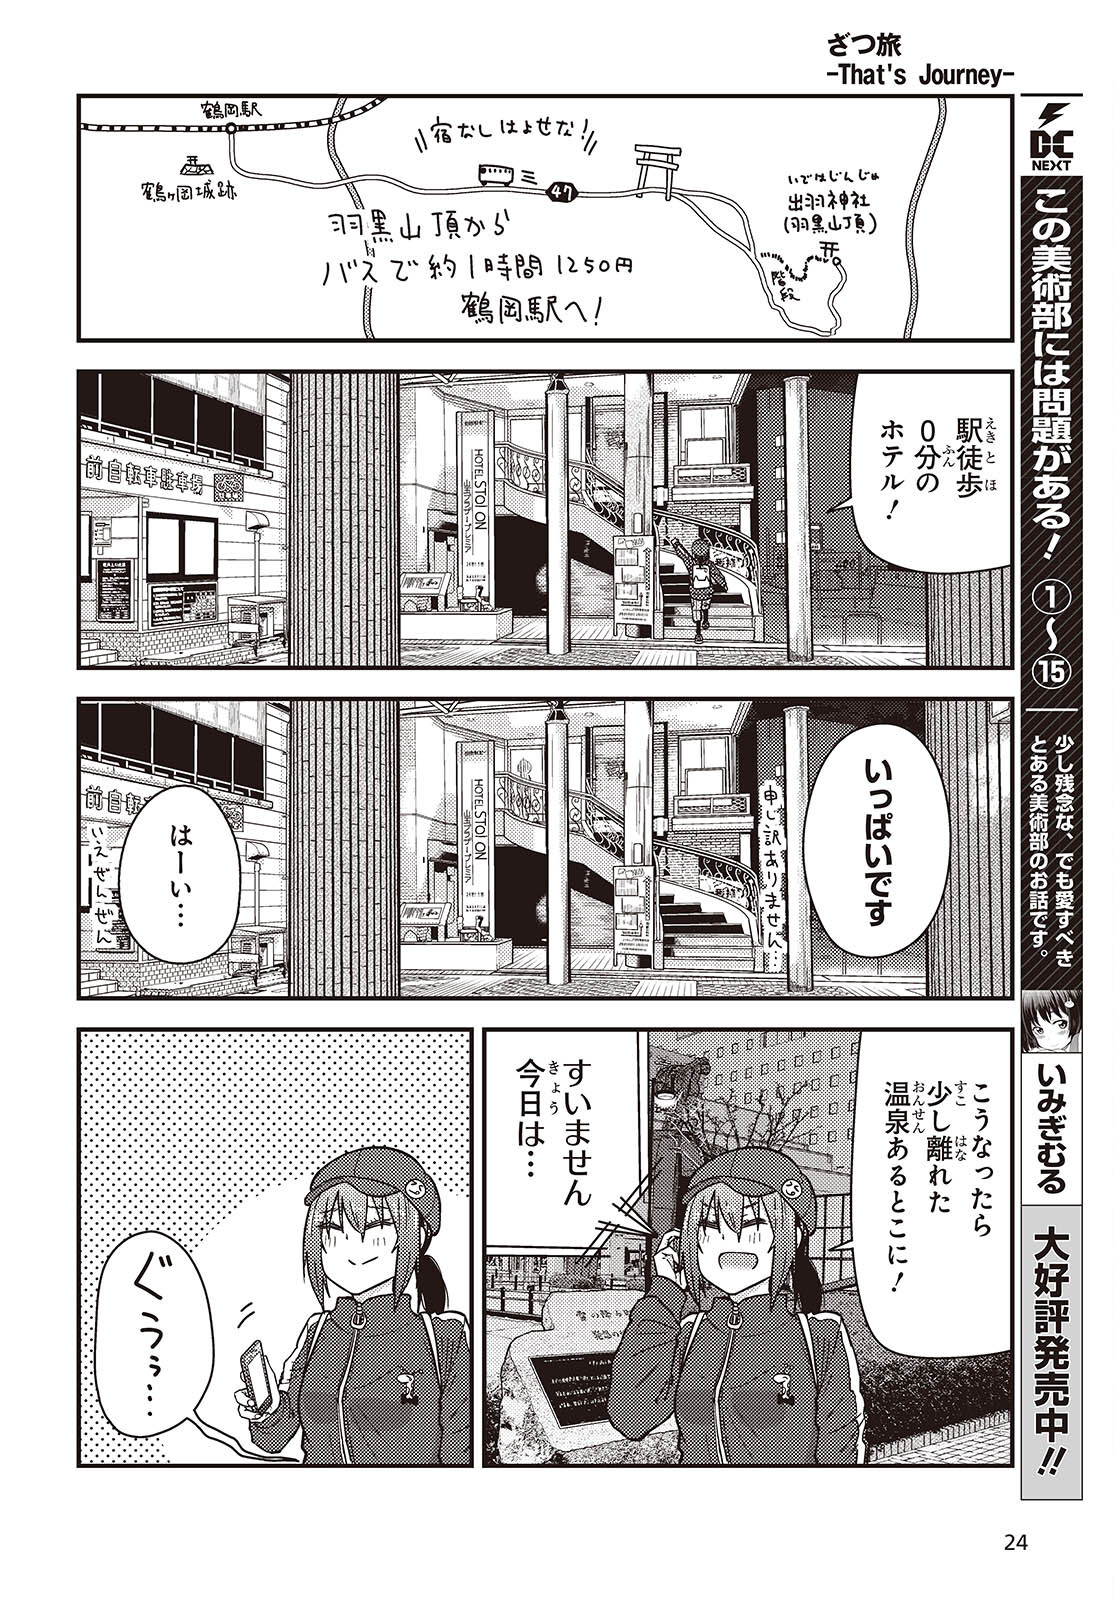 ざつ旅-That's Journey- 第38話 - Page 22